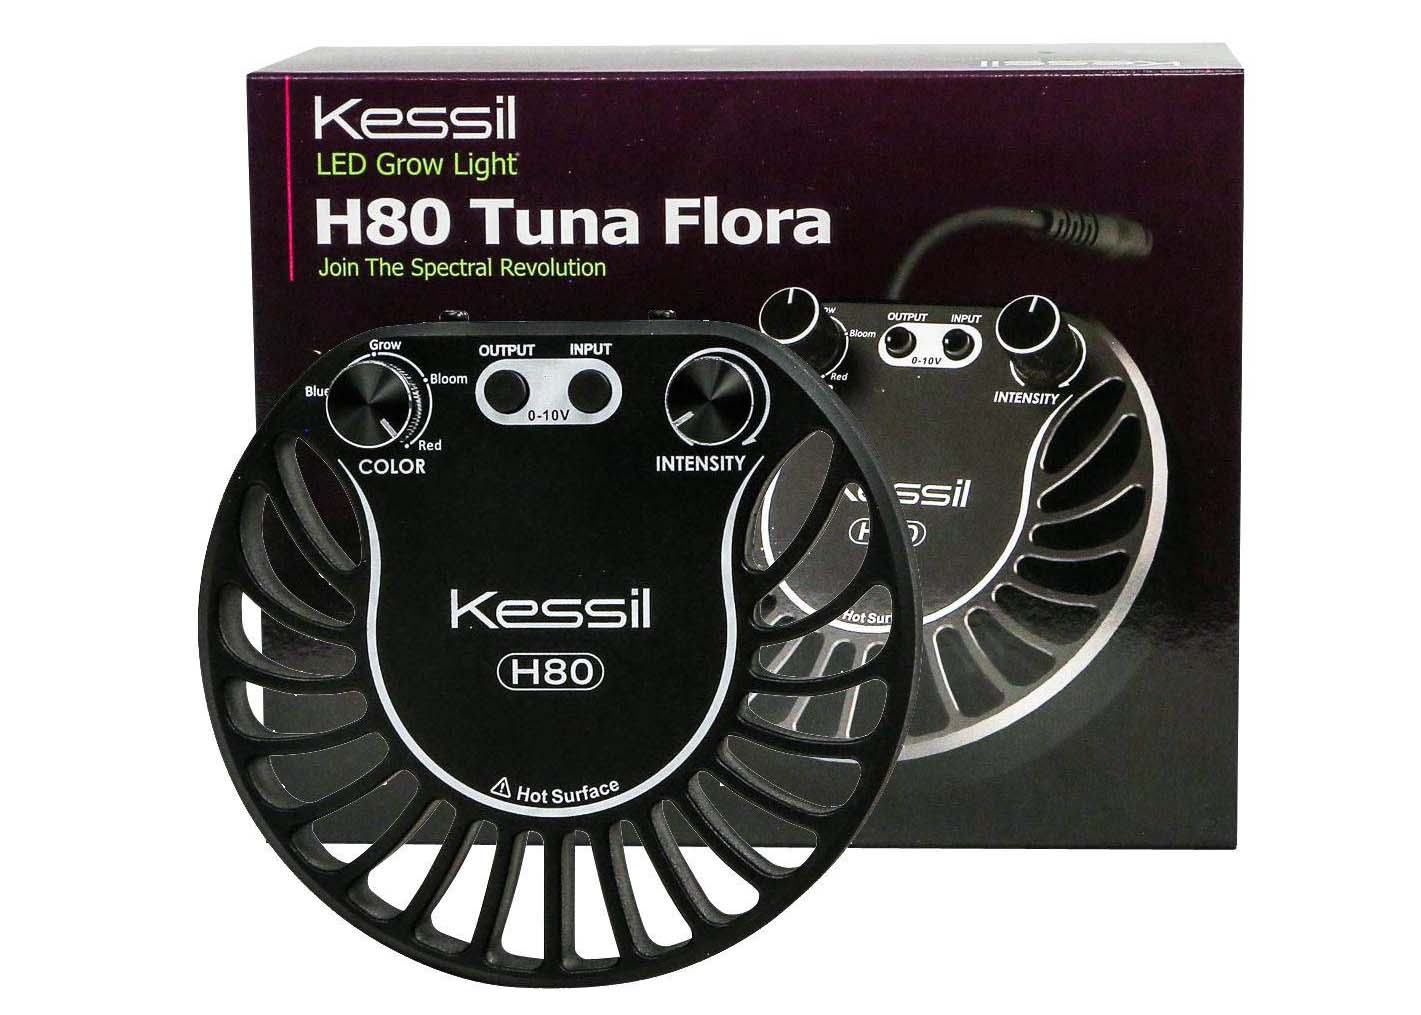 Kessil H80 Tuna Flora